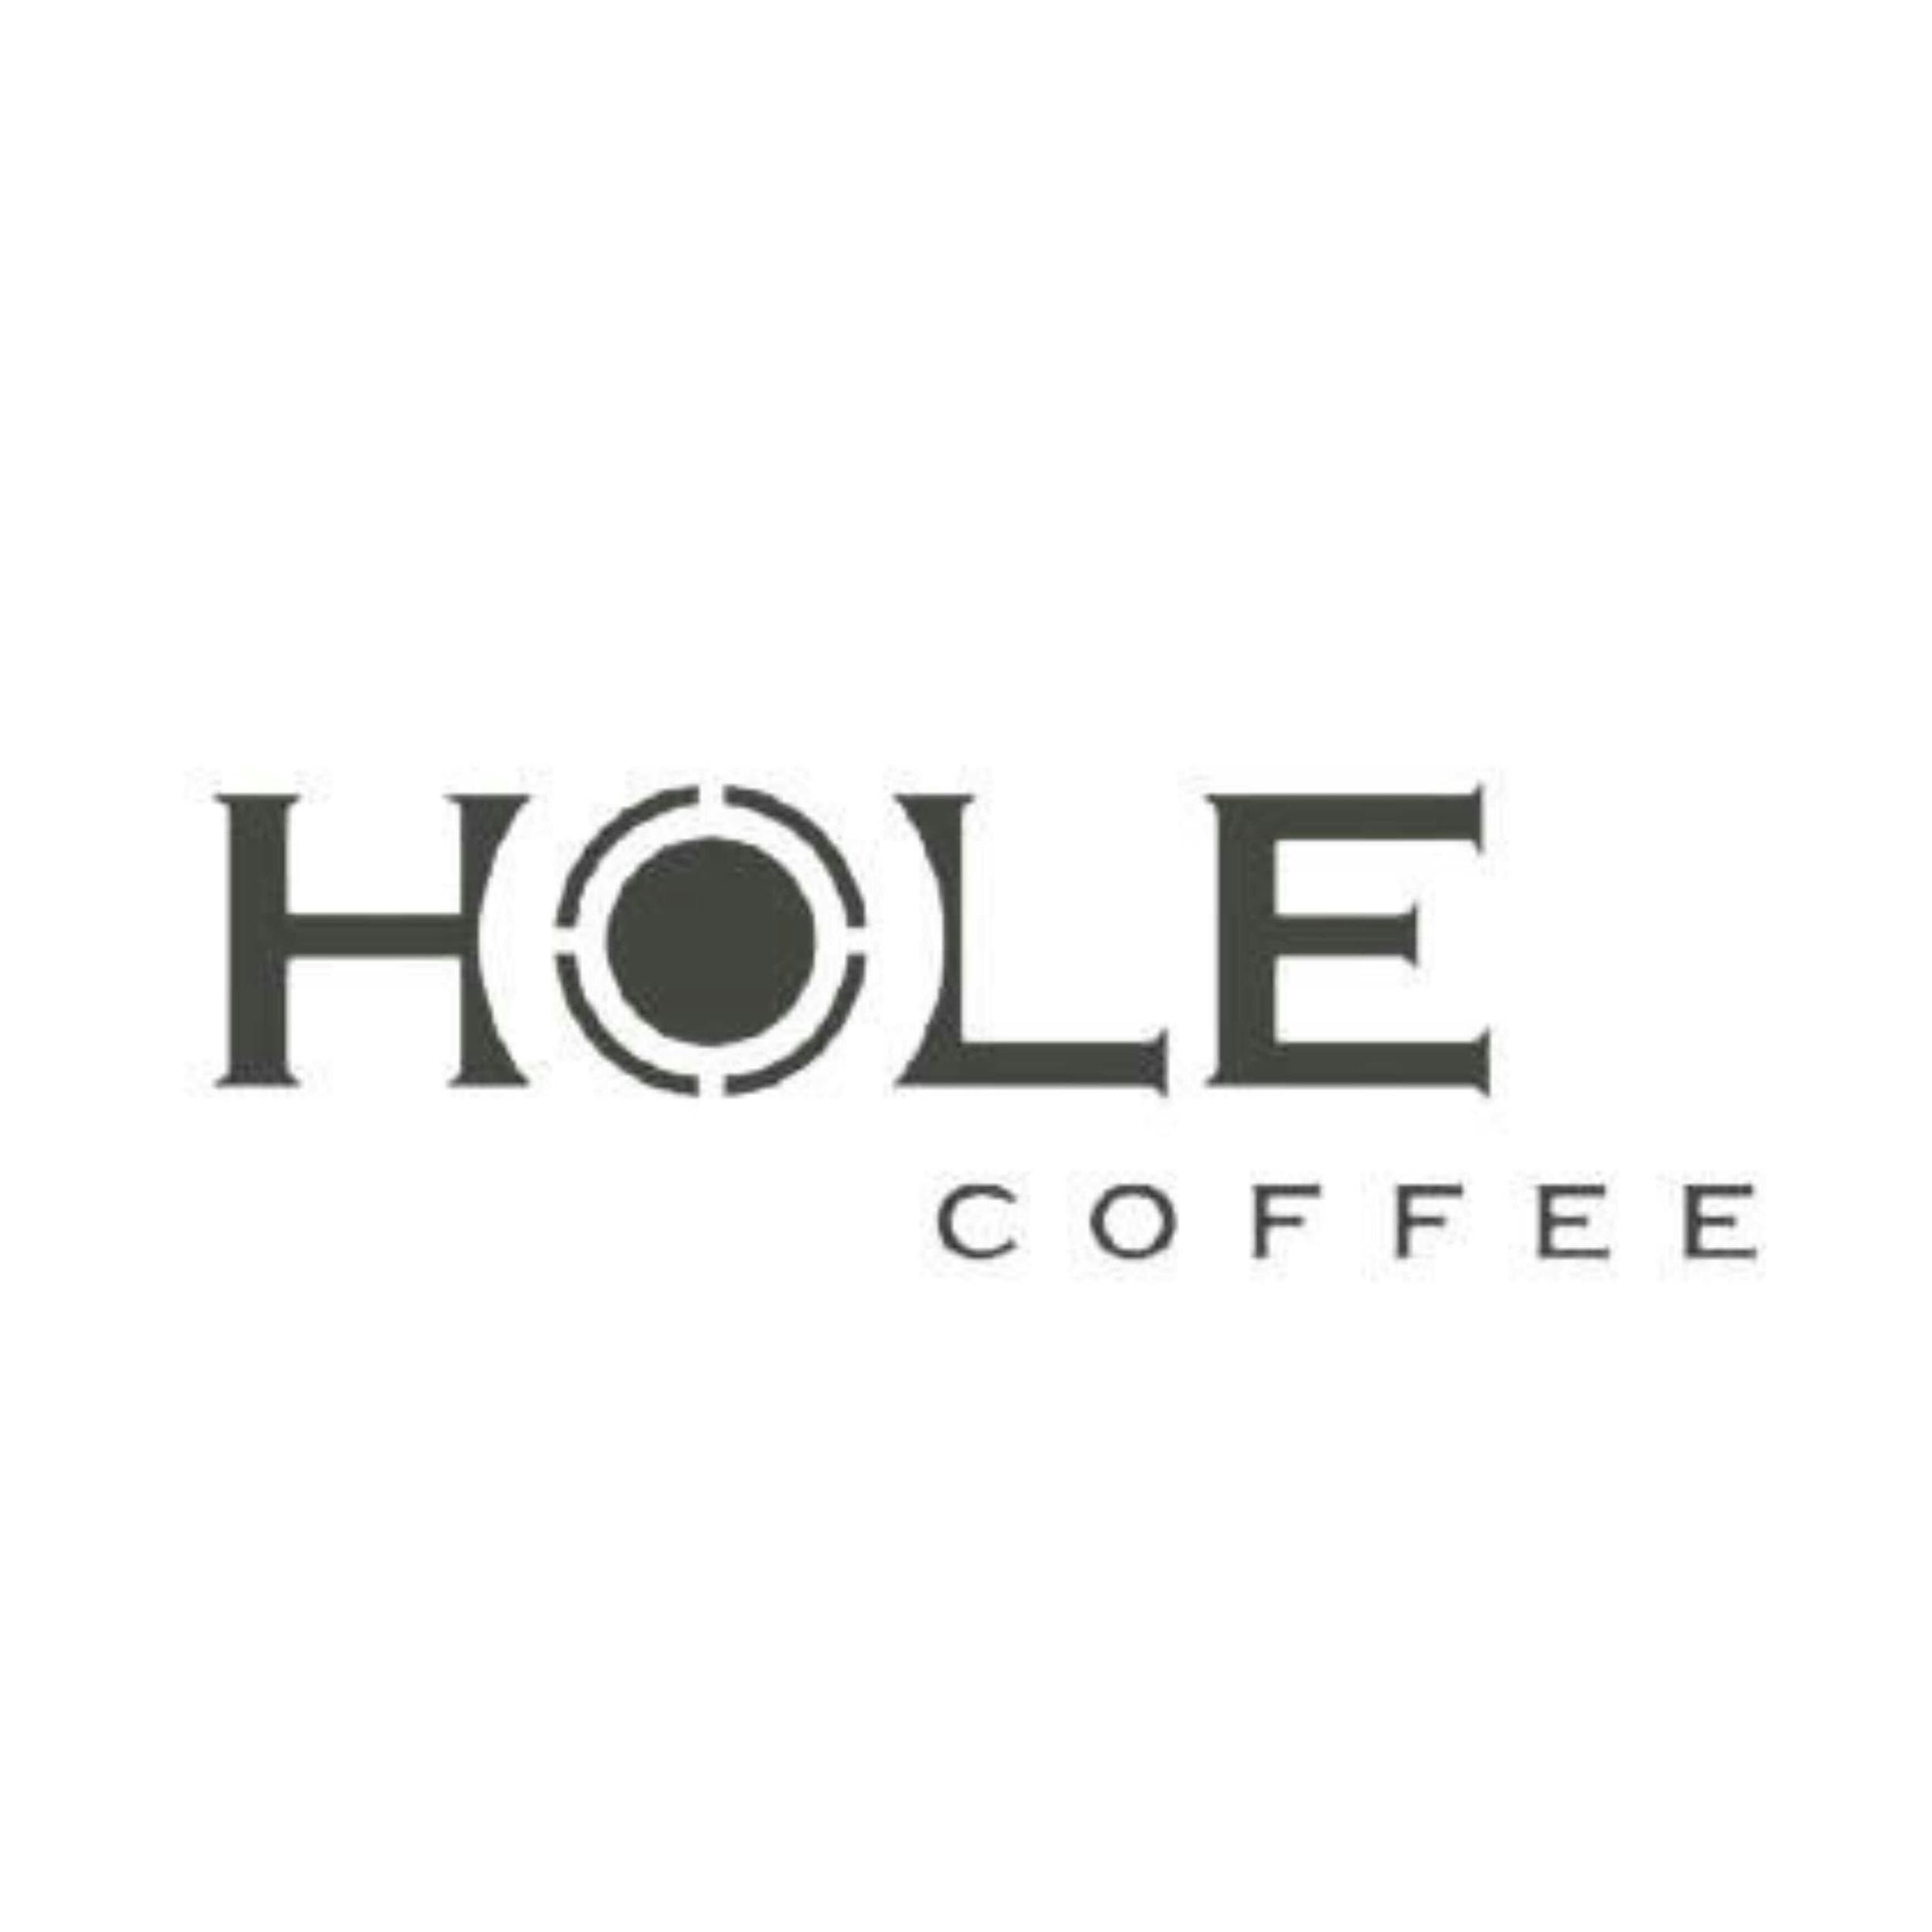 Hole Coffee